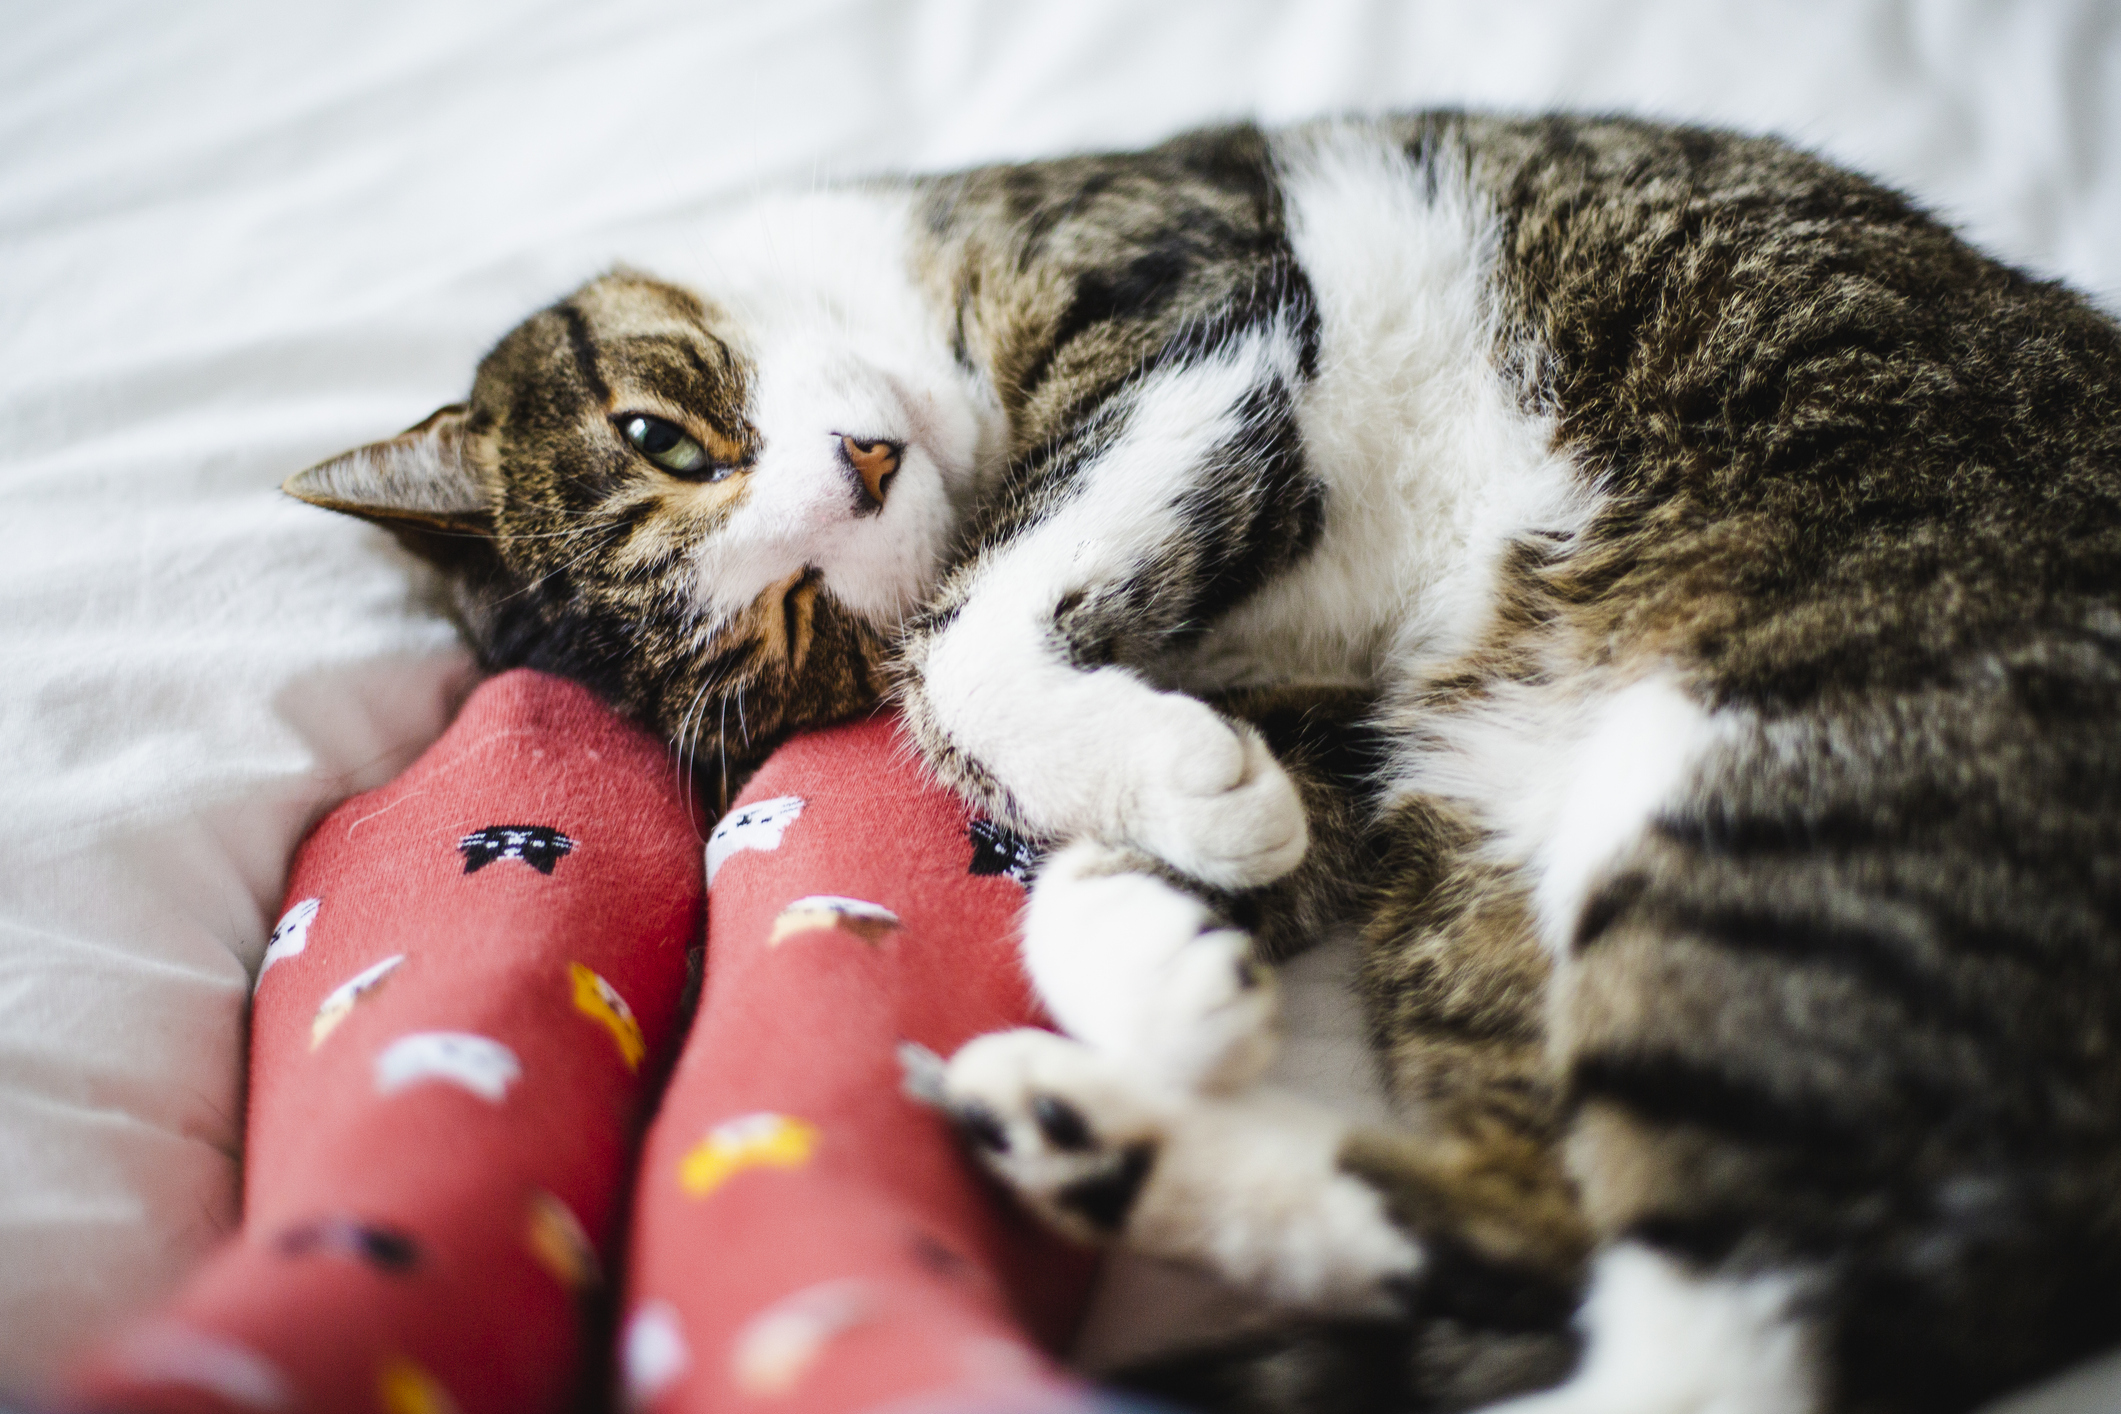 8 razones por las que convivir con un gato puede mejorar la calidad de vida